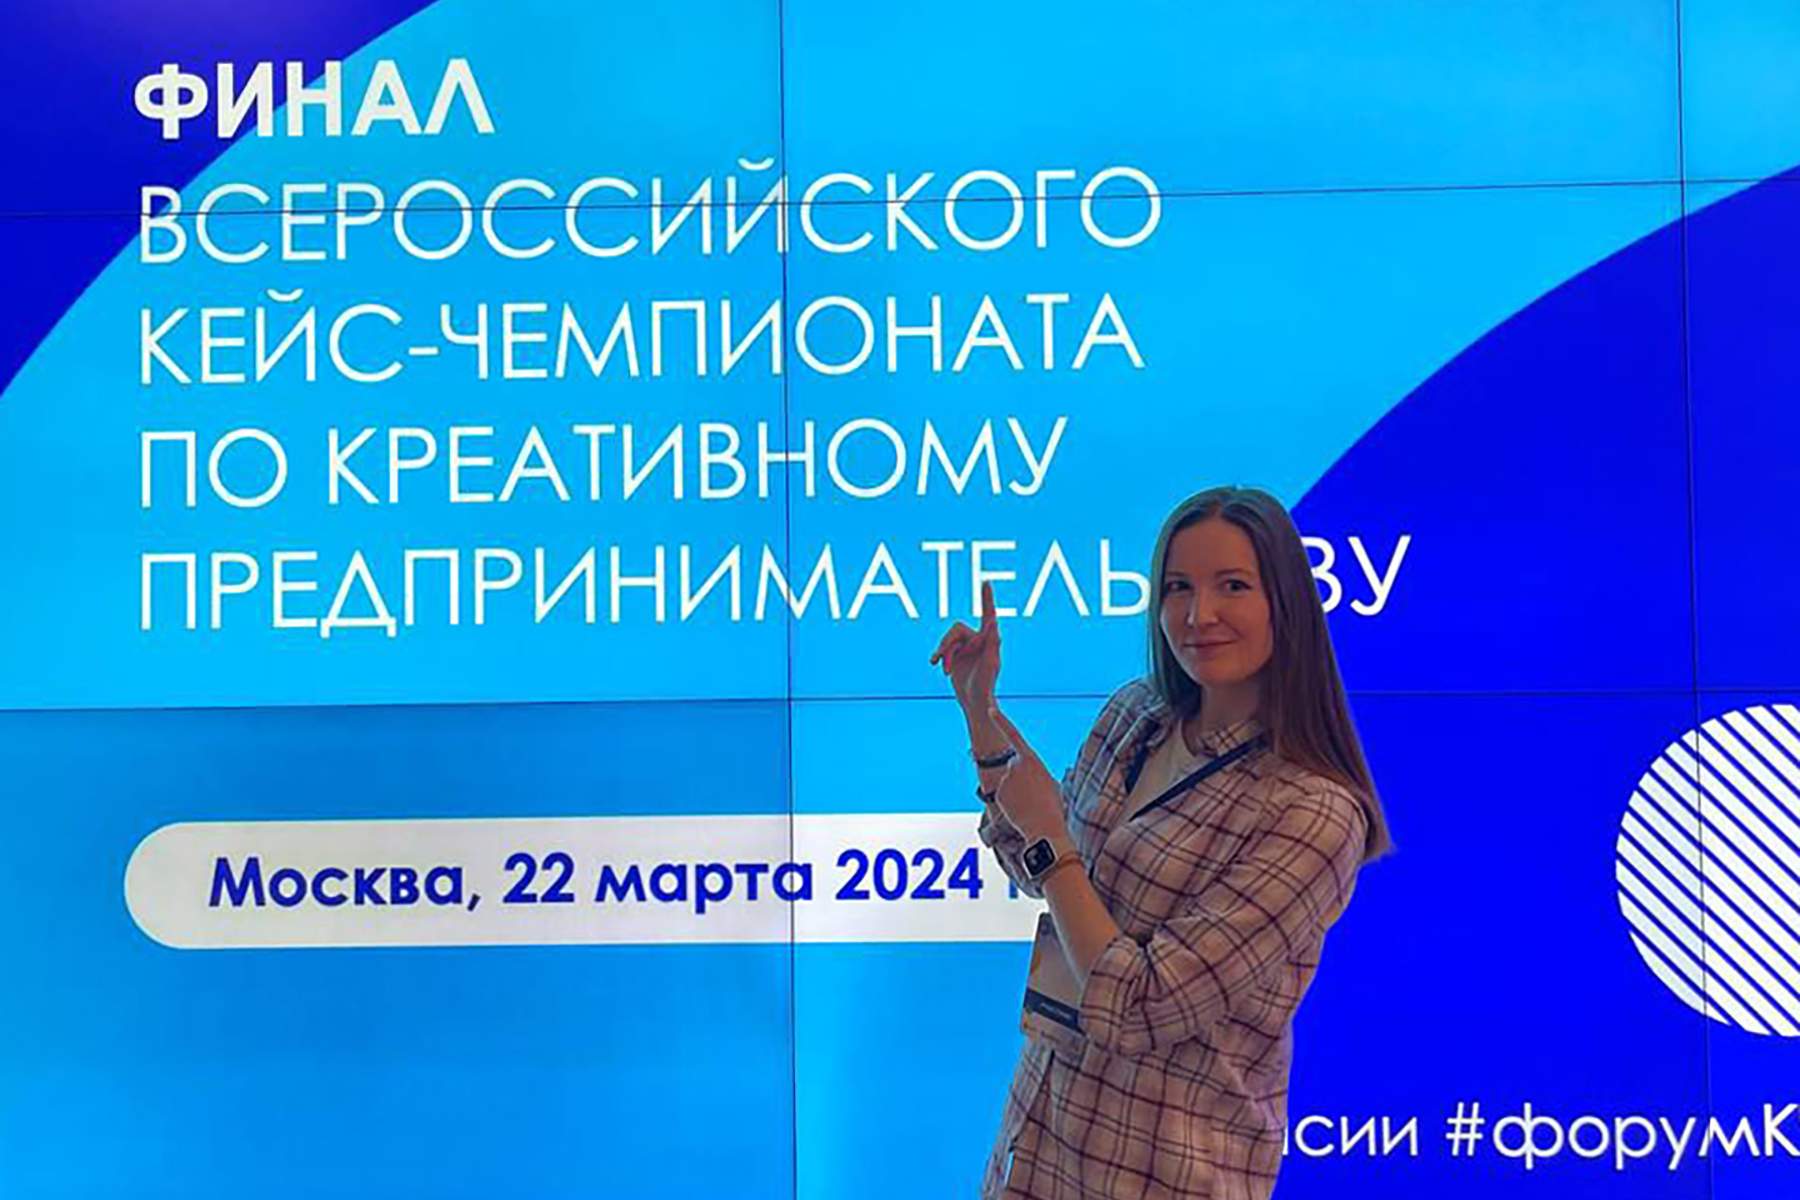 Преподаватель ВВГУ успешно выступила на кейс-чемпионате по креативному предпринимательству в Москве